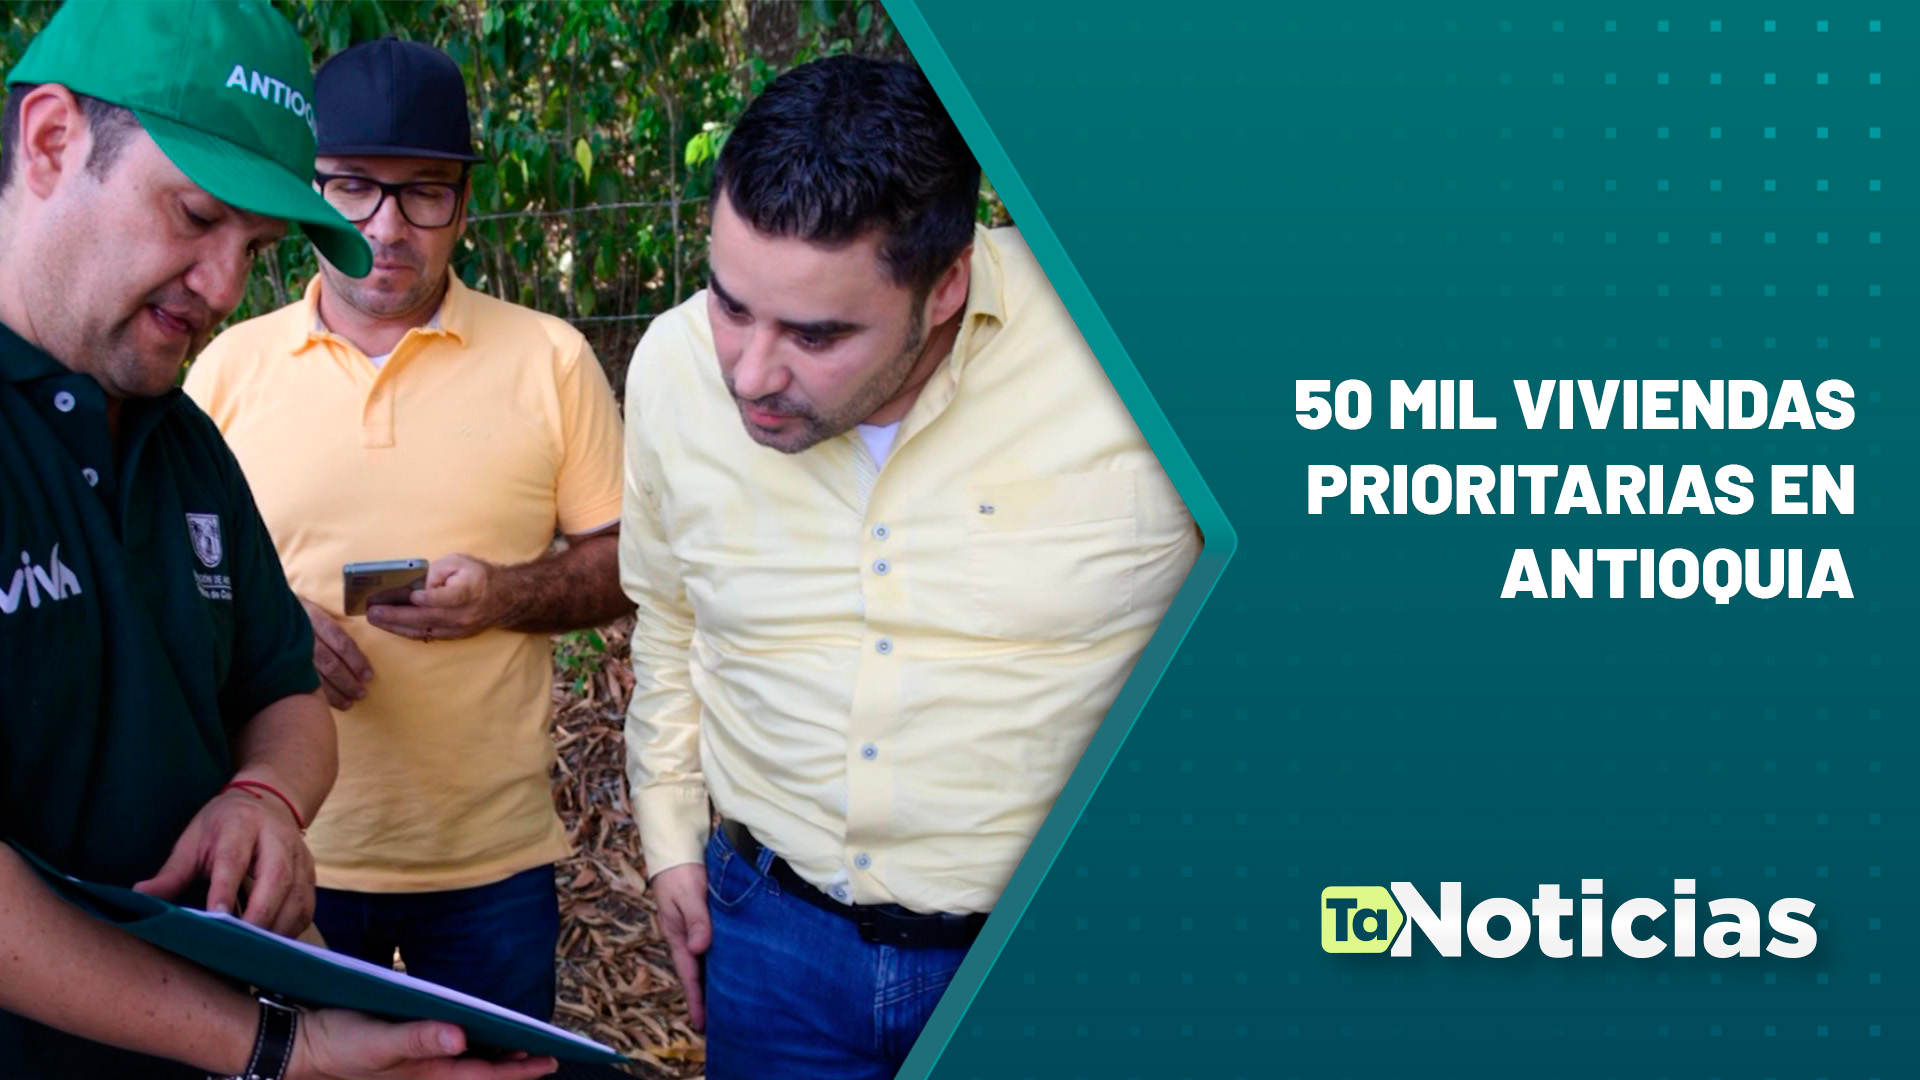 50 mil viviendas prioritarias en Antioquia